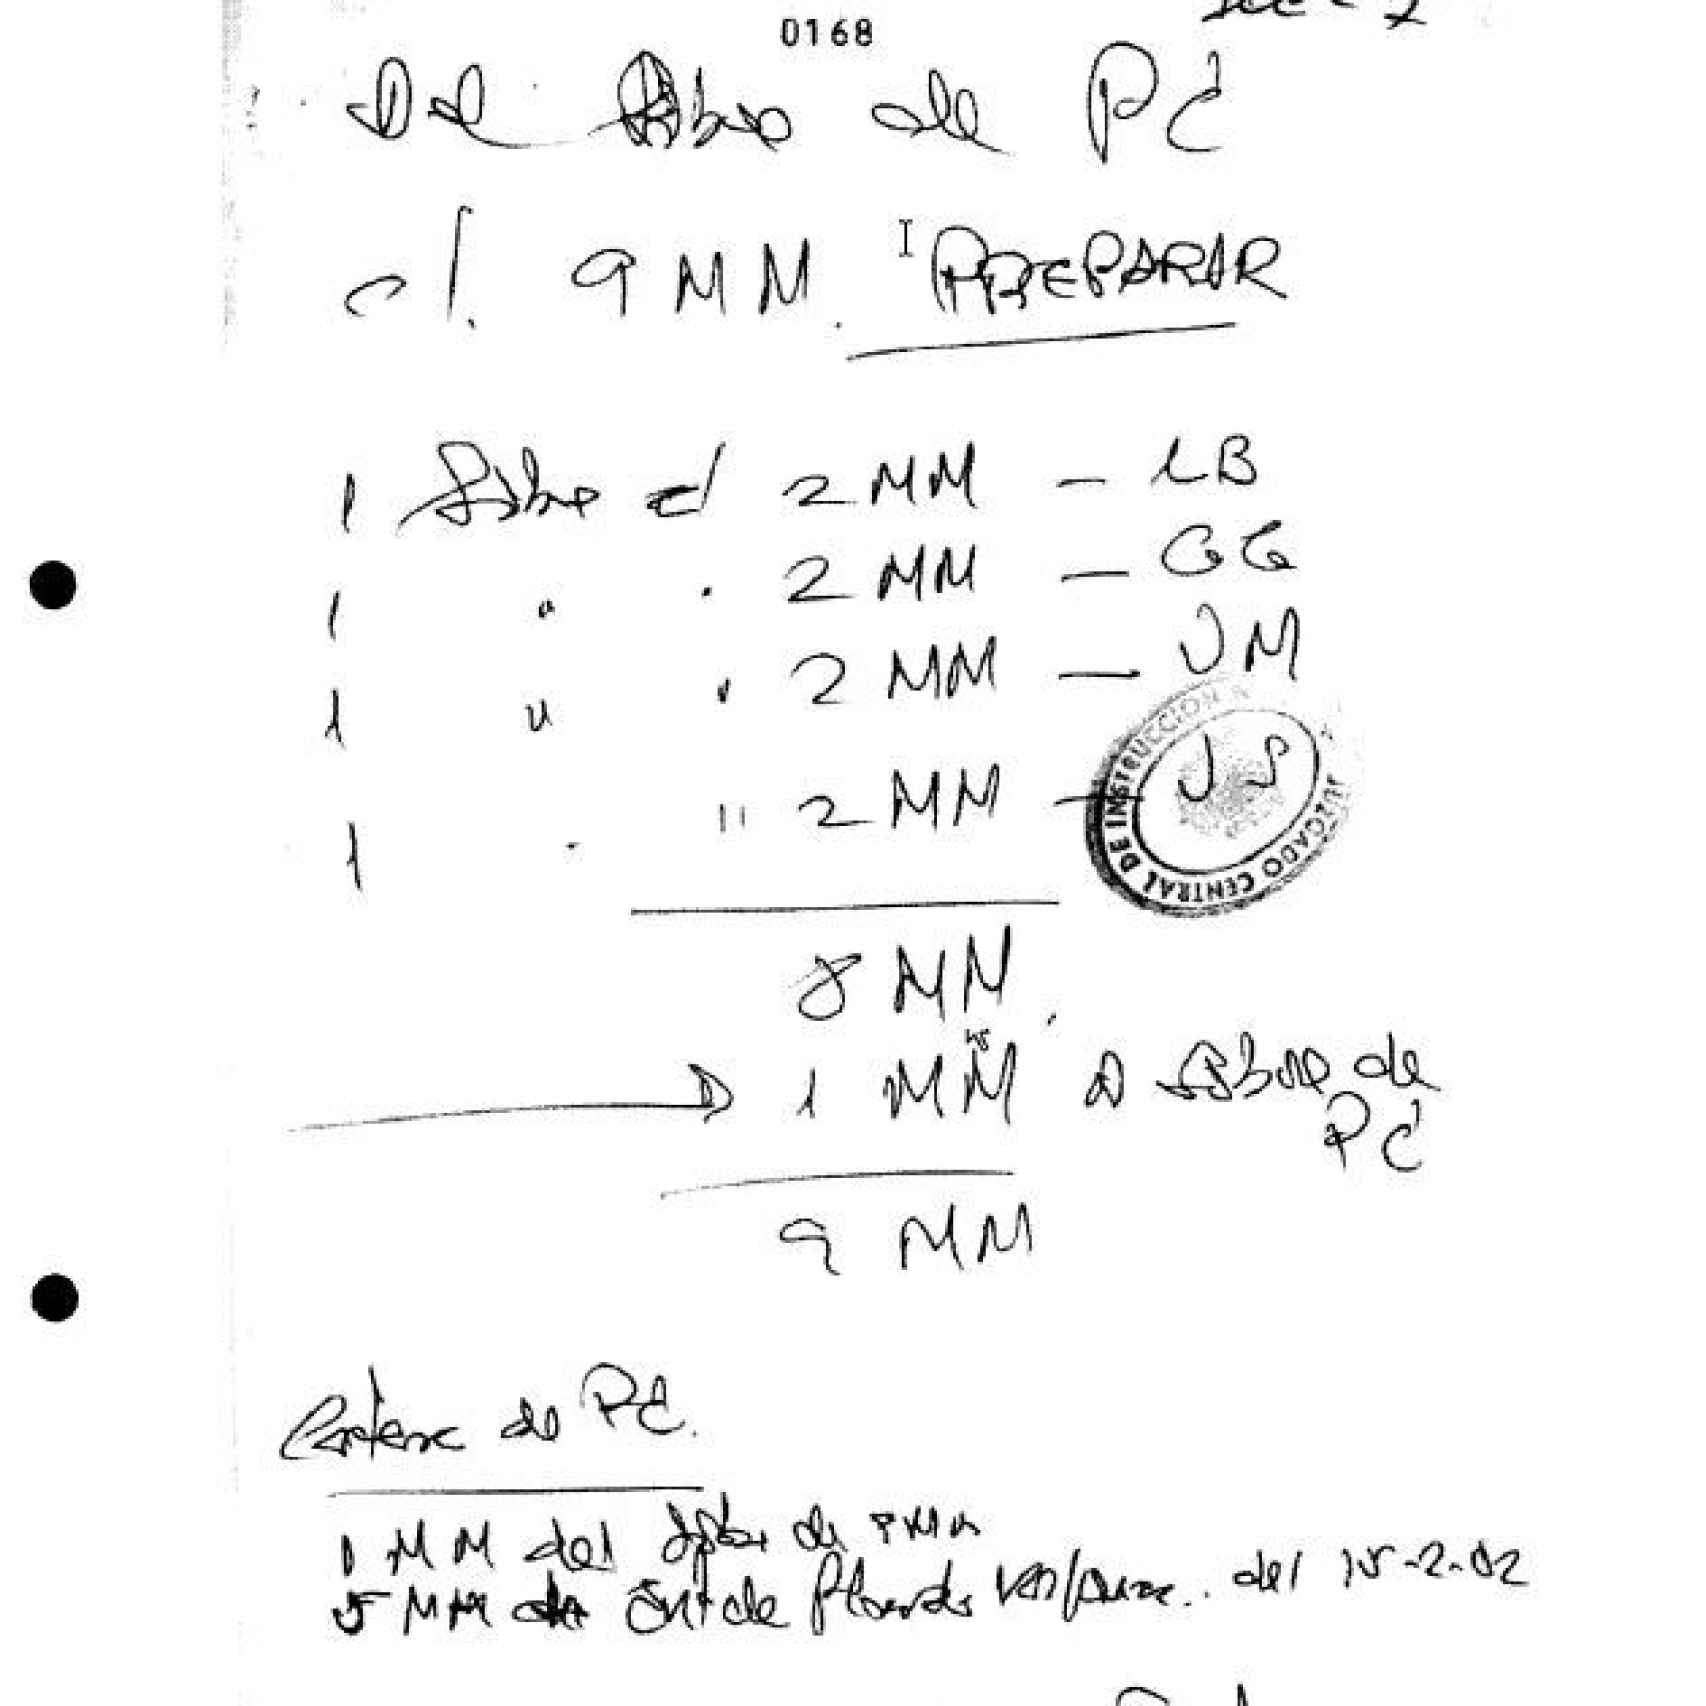 Uno de los manuscritos del contable de Correa, incorporado a un informe de la AET